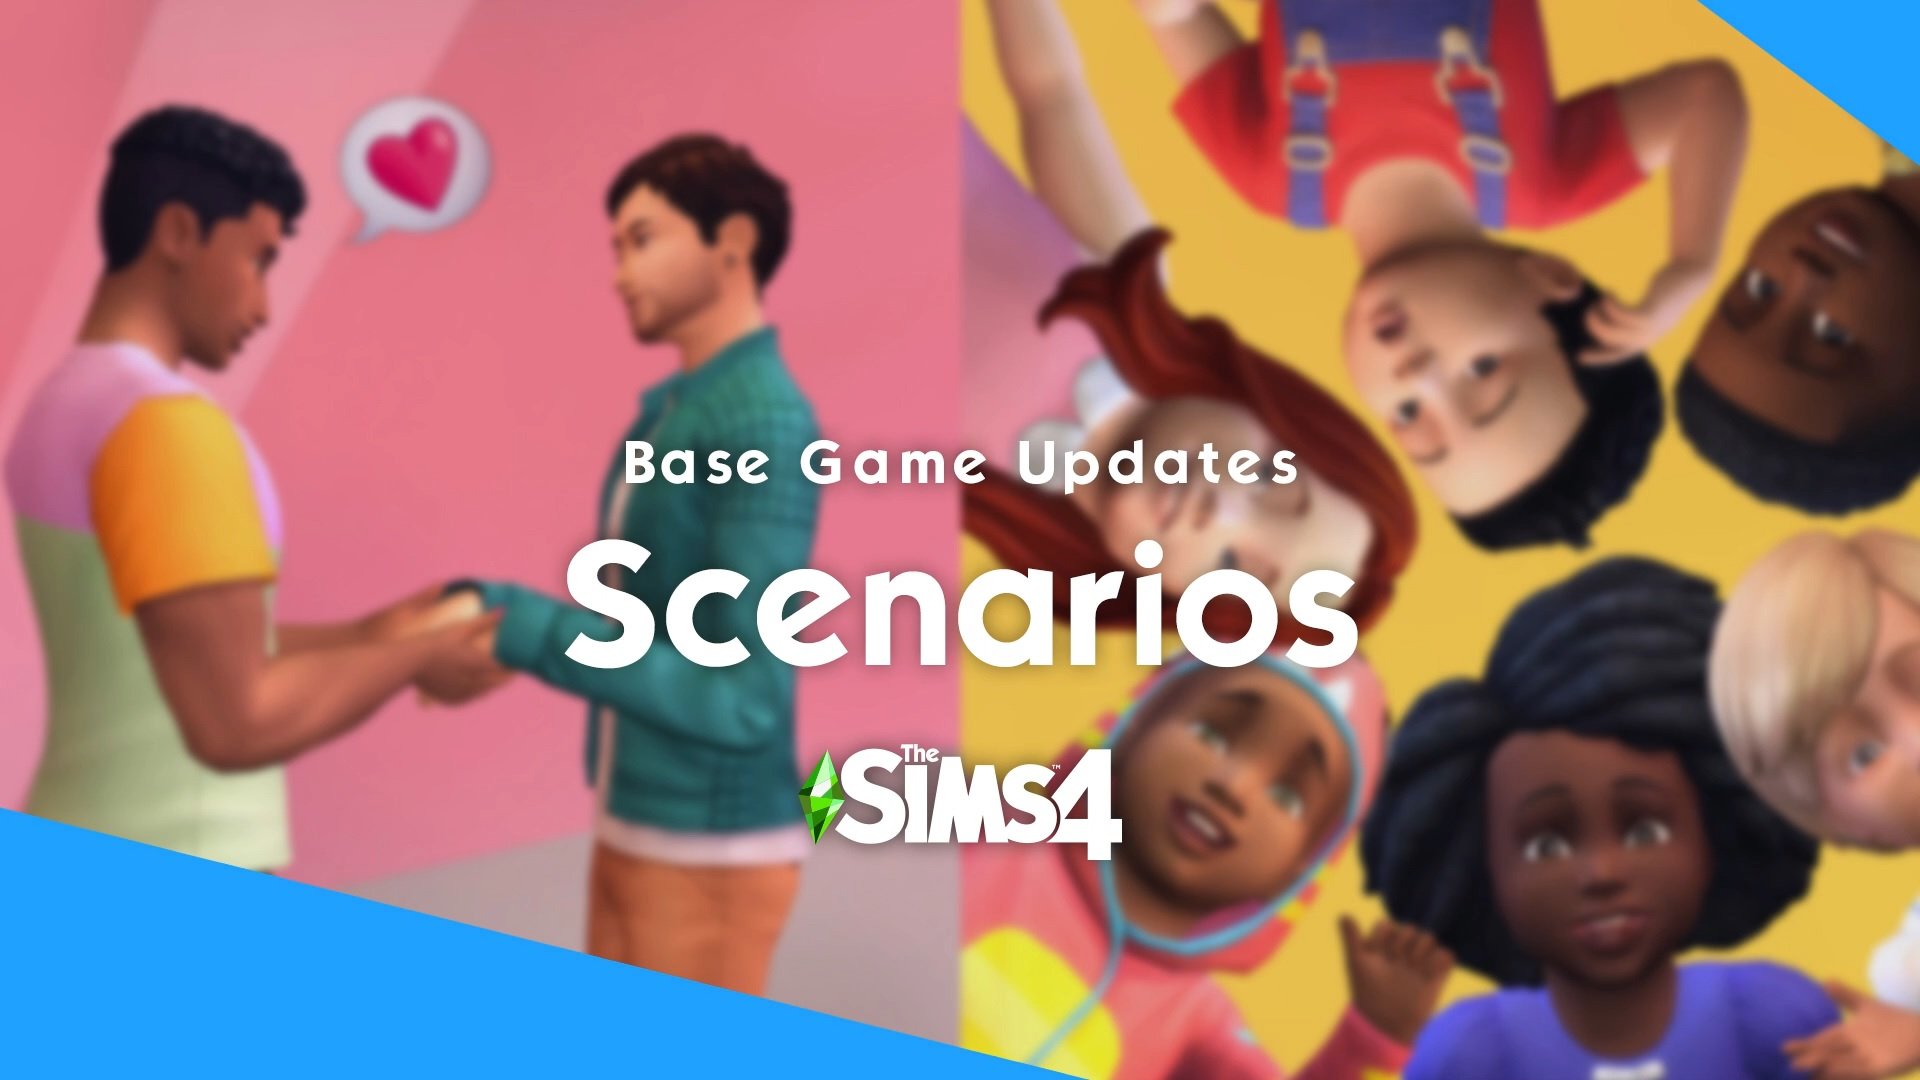 The Sims 4 เตรียมวางจำหน่าย DLC ใหม่ พร้อมกับโหมด Scenarios ในแพตช์ 9 พฤศจิกายนนี้